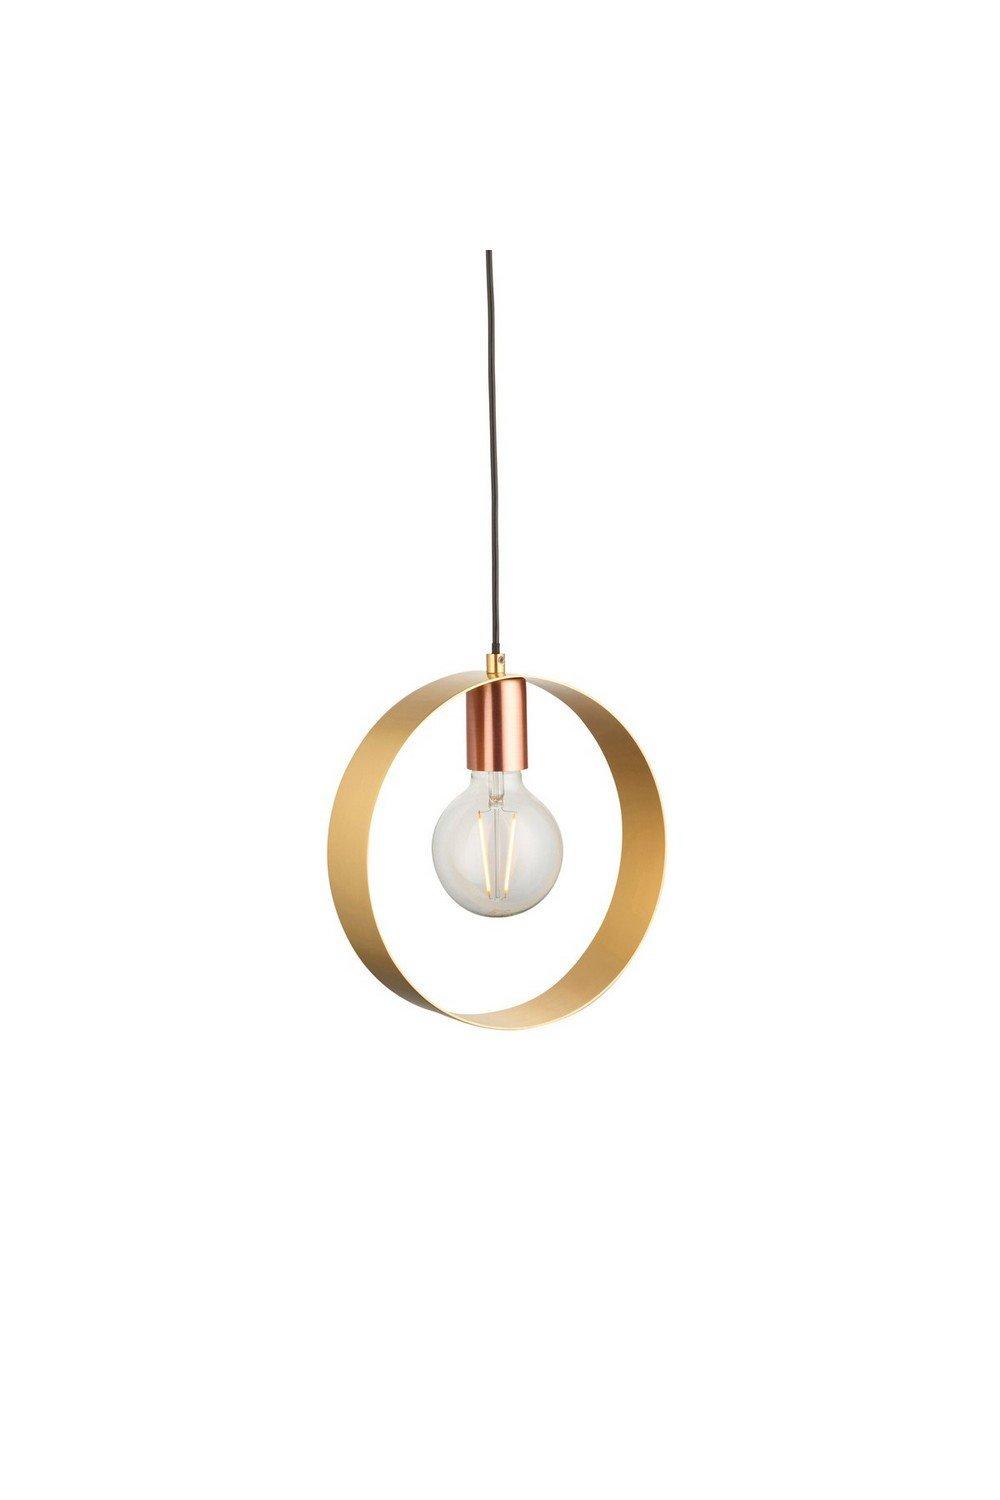 Hoop Single Pendant Ceiling Lamp Brushed Brass Nickel Copper Plate